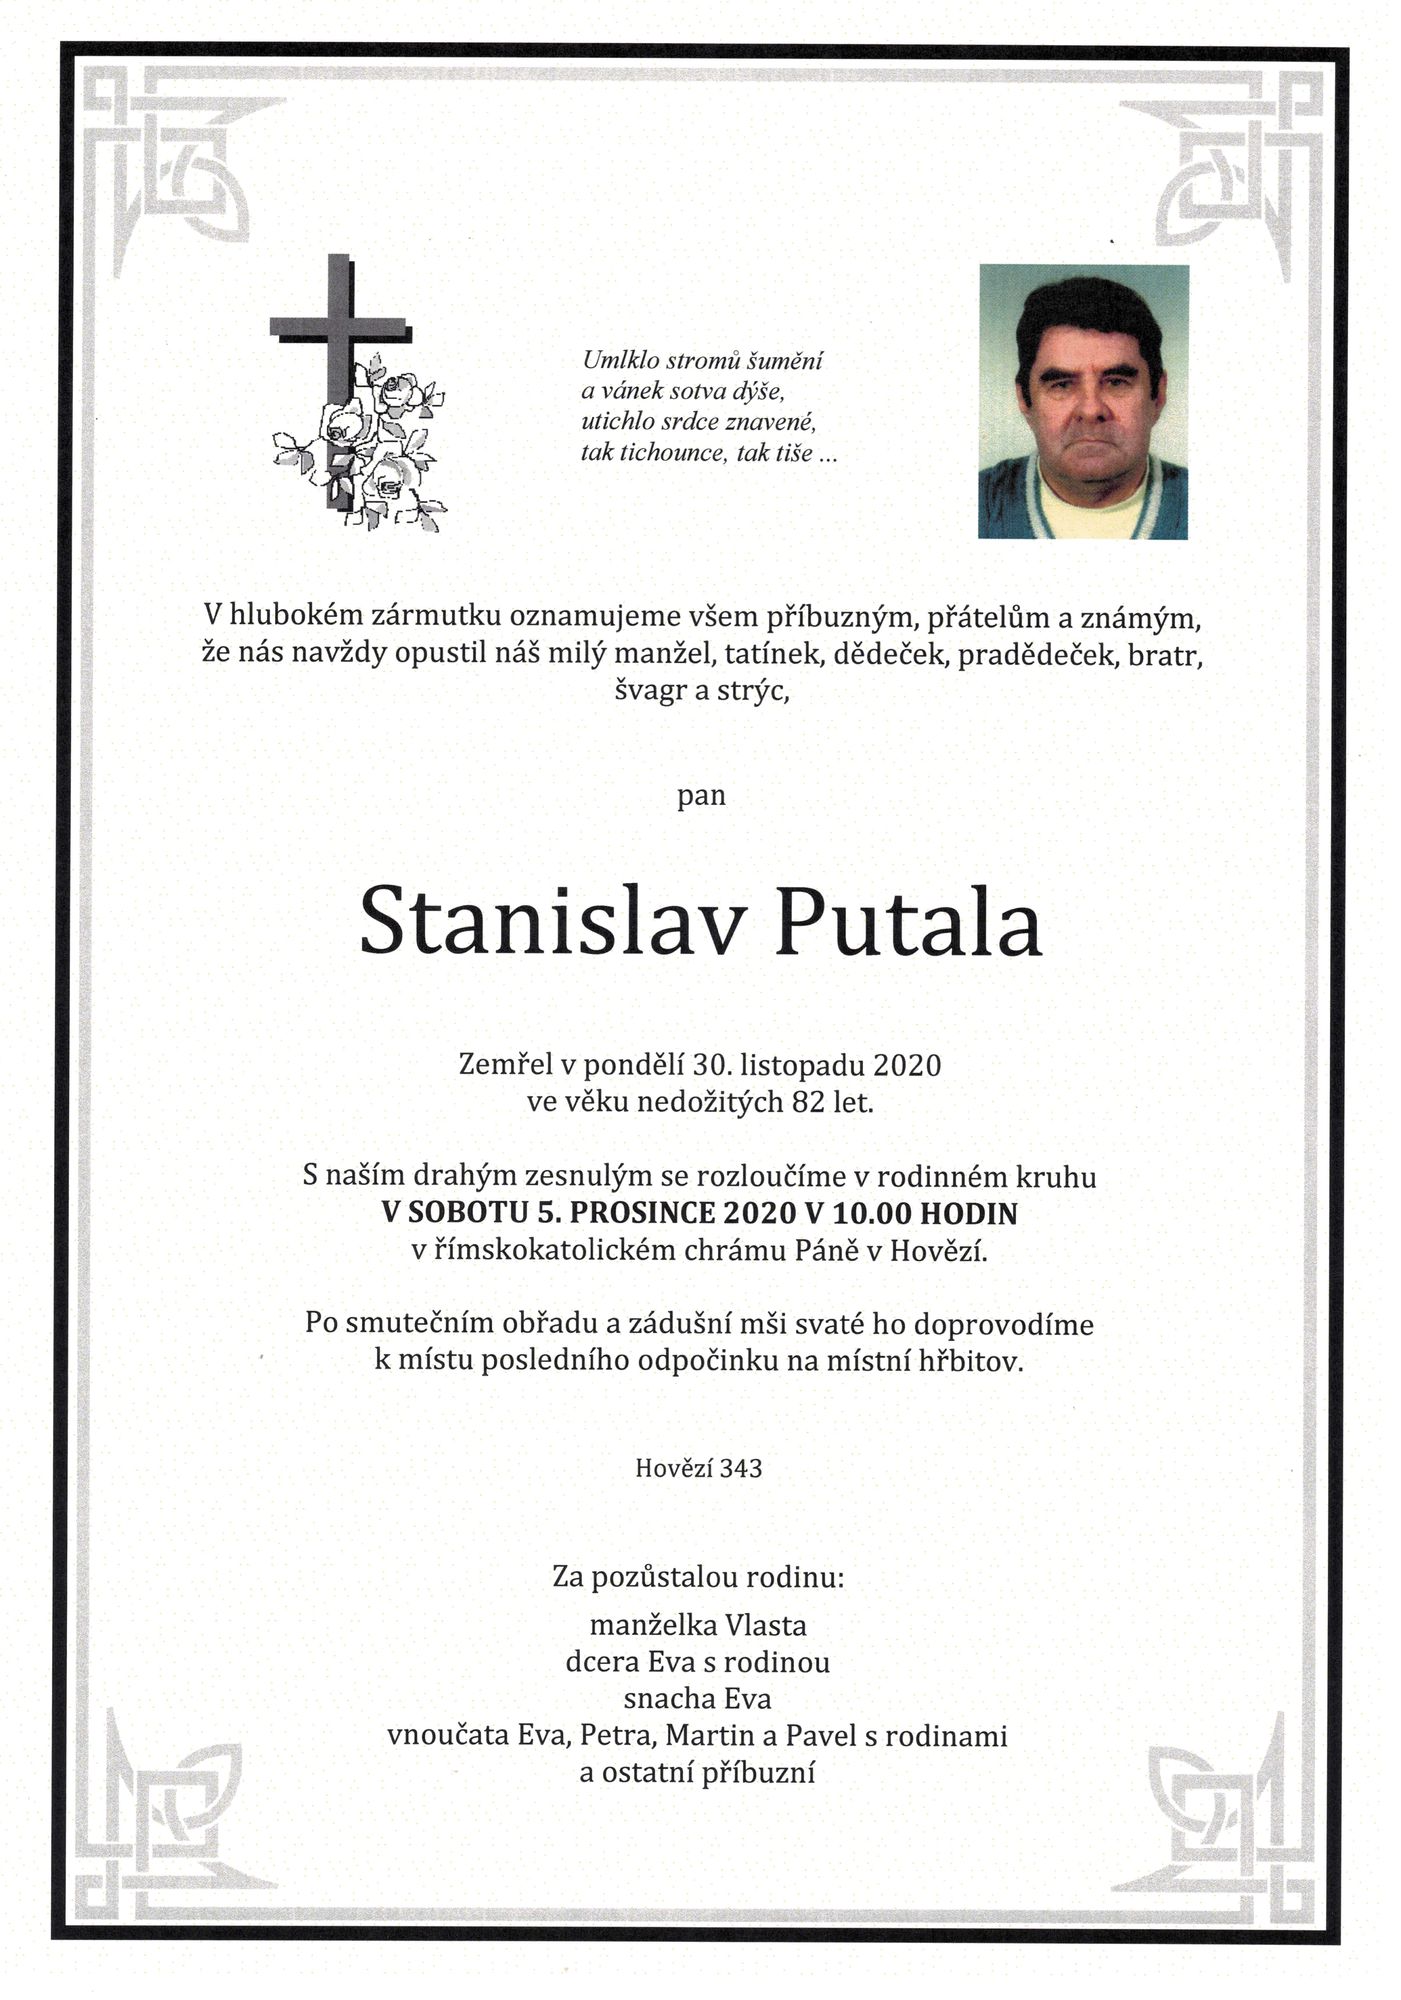 Stanislav Putala